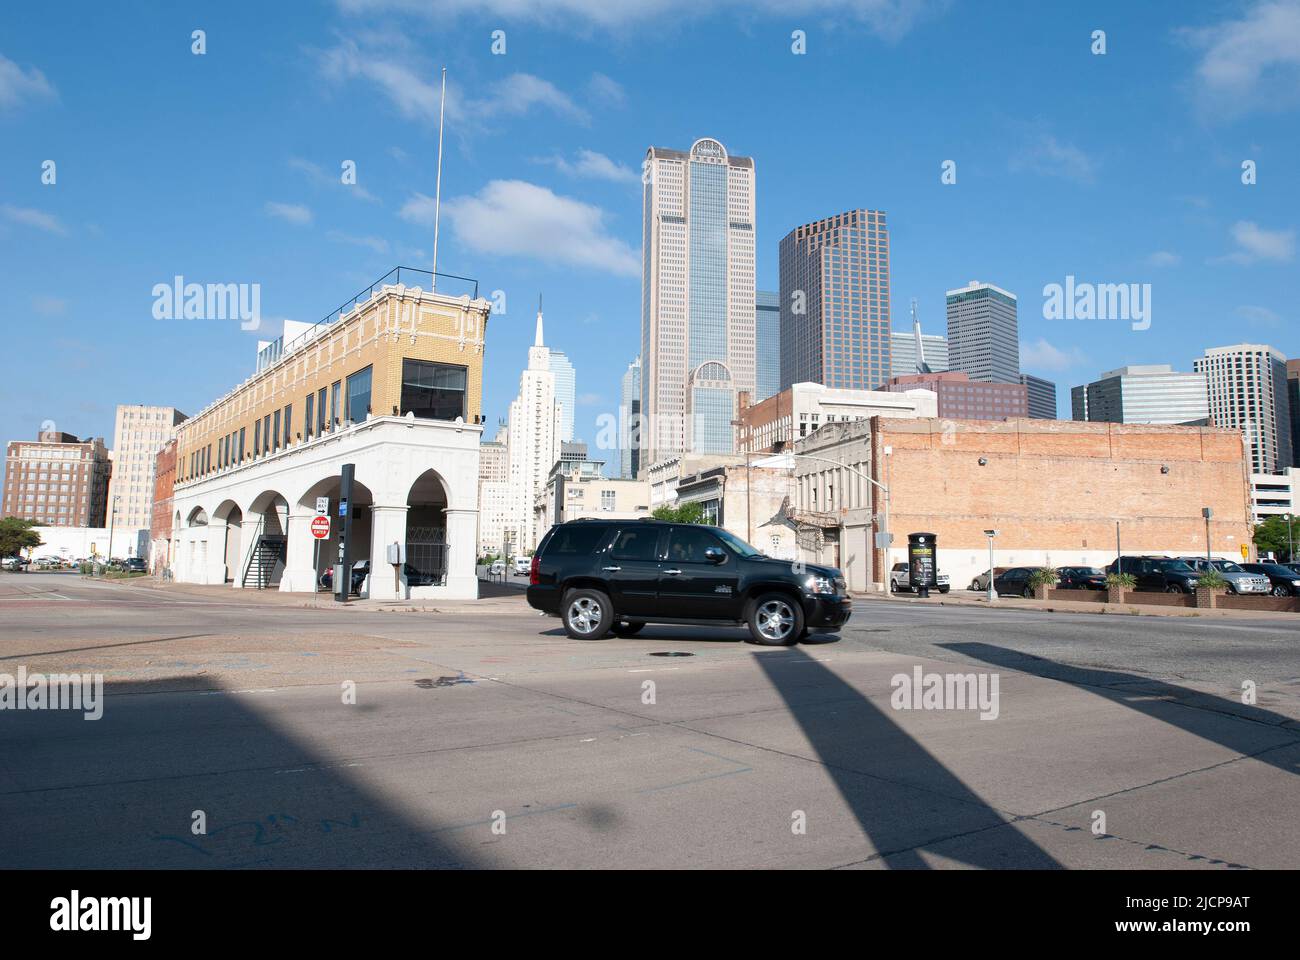 Schwarzer SUV, der nach links mit der Innenstadt von Dallas Texas im Hintergrund abbiegt, Blick nach Westen von der östlichen Seite der Innenstadt von Ca. 2013 Stockfoto